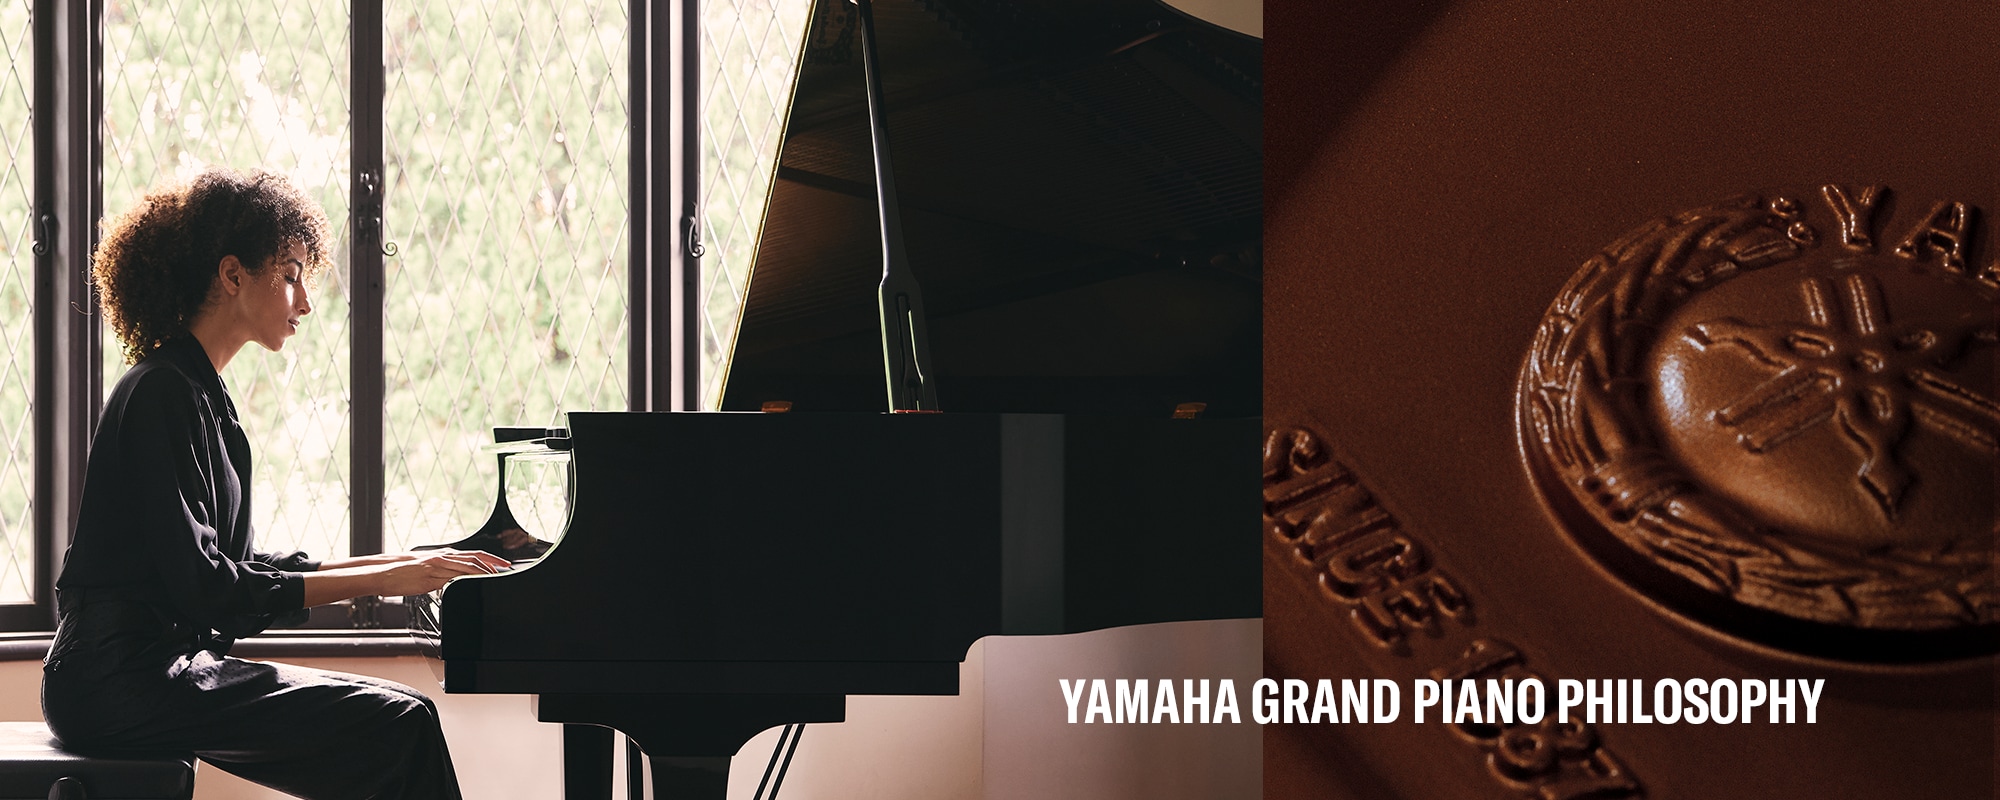 วิสัยทัศน์หลักของปรัชญาของเปียโนแกรนด์ของ YAMAHA